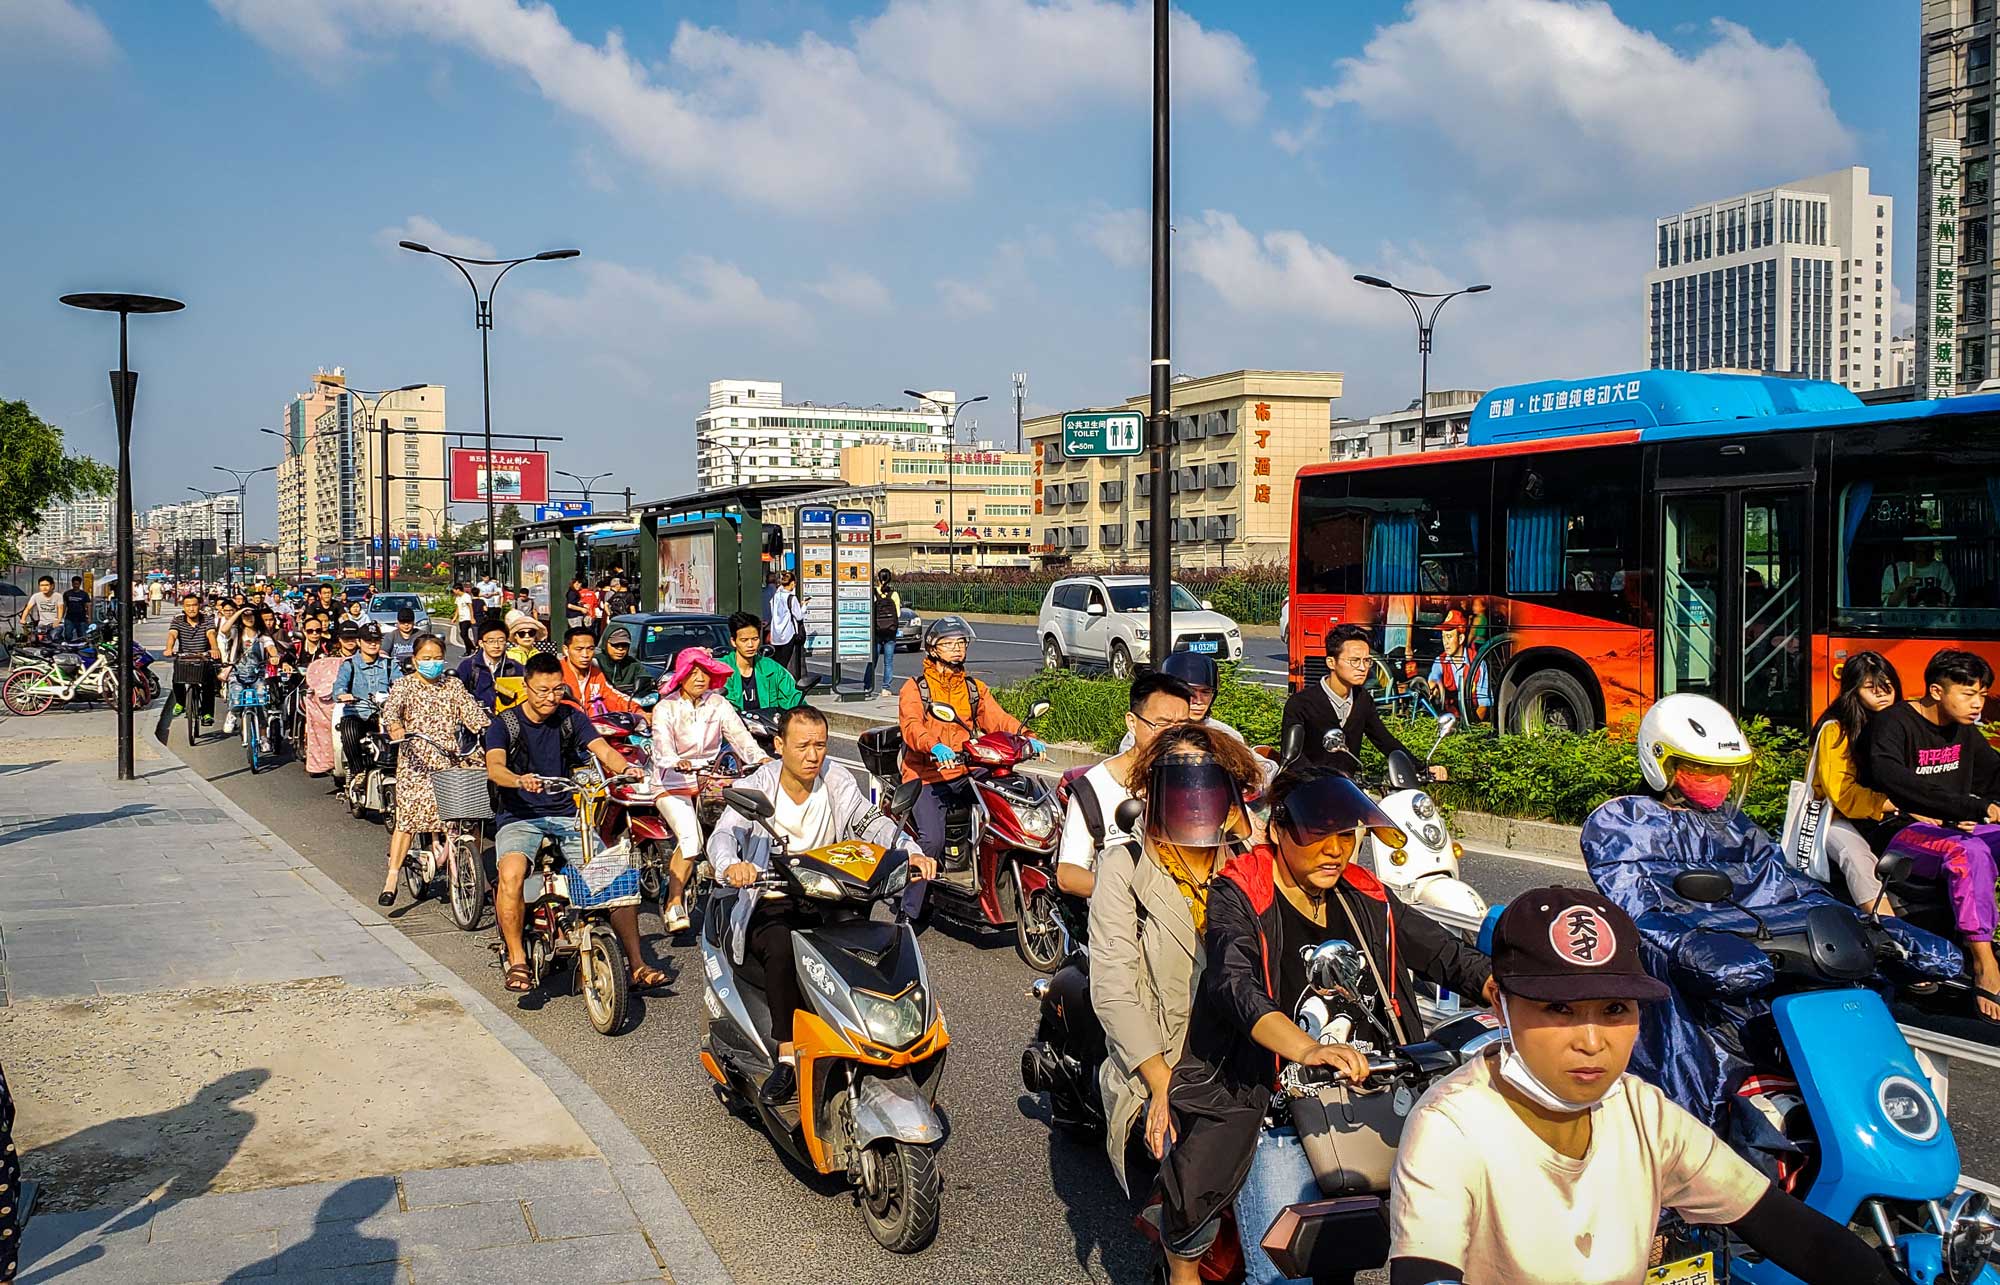 Excesso de motos na China